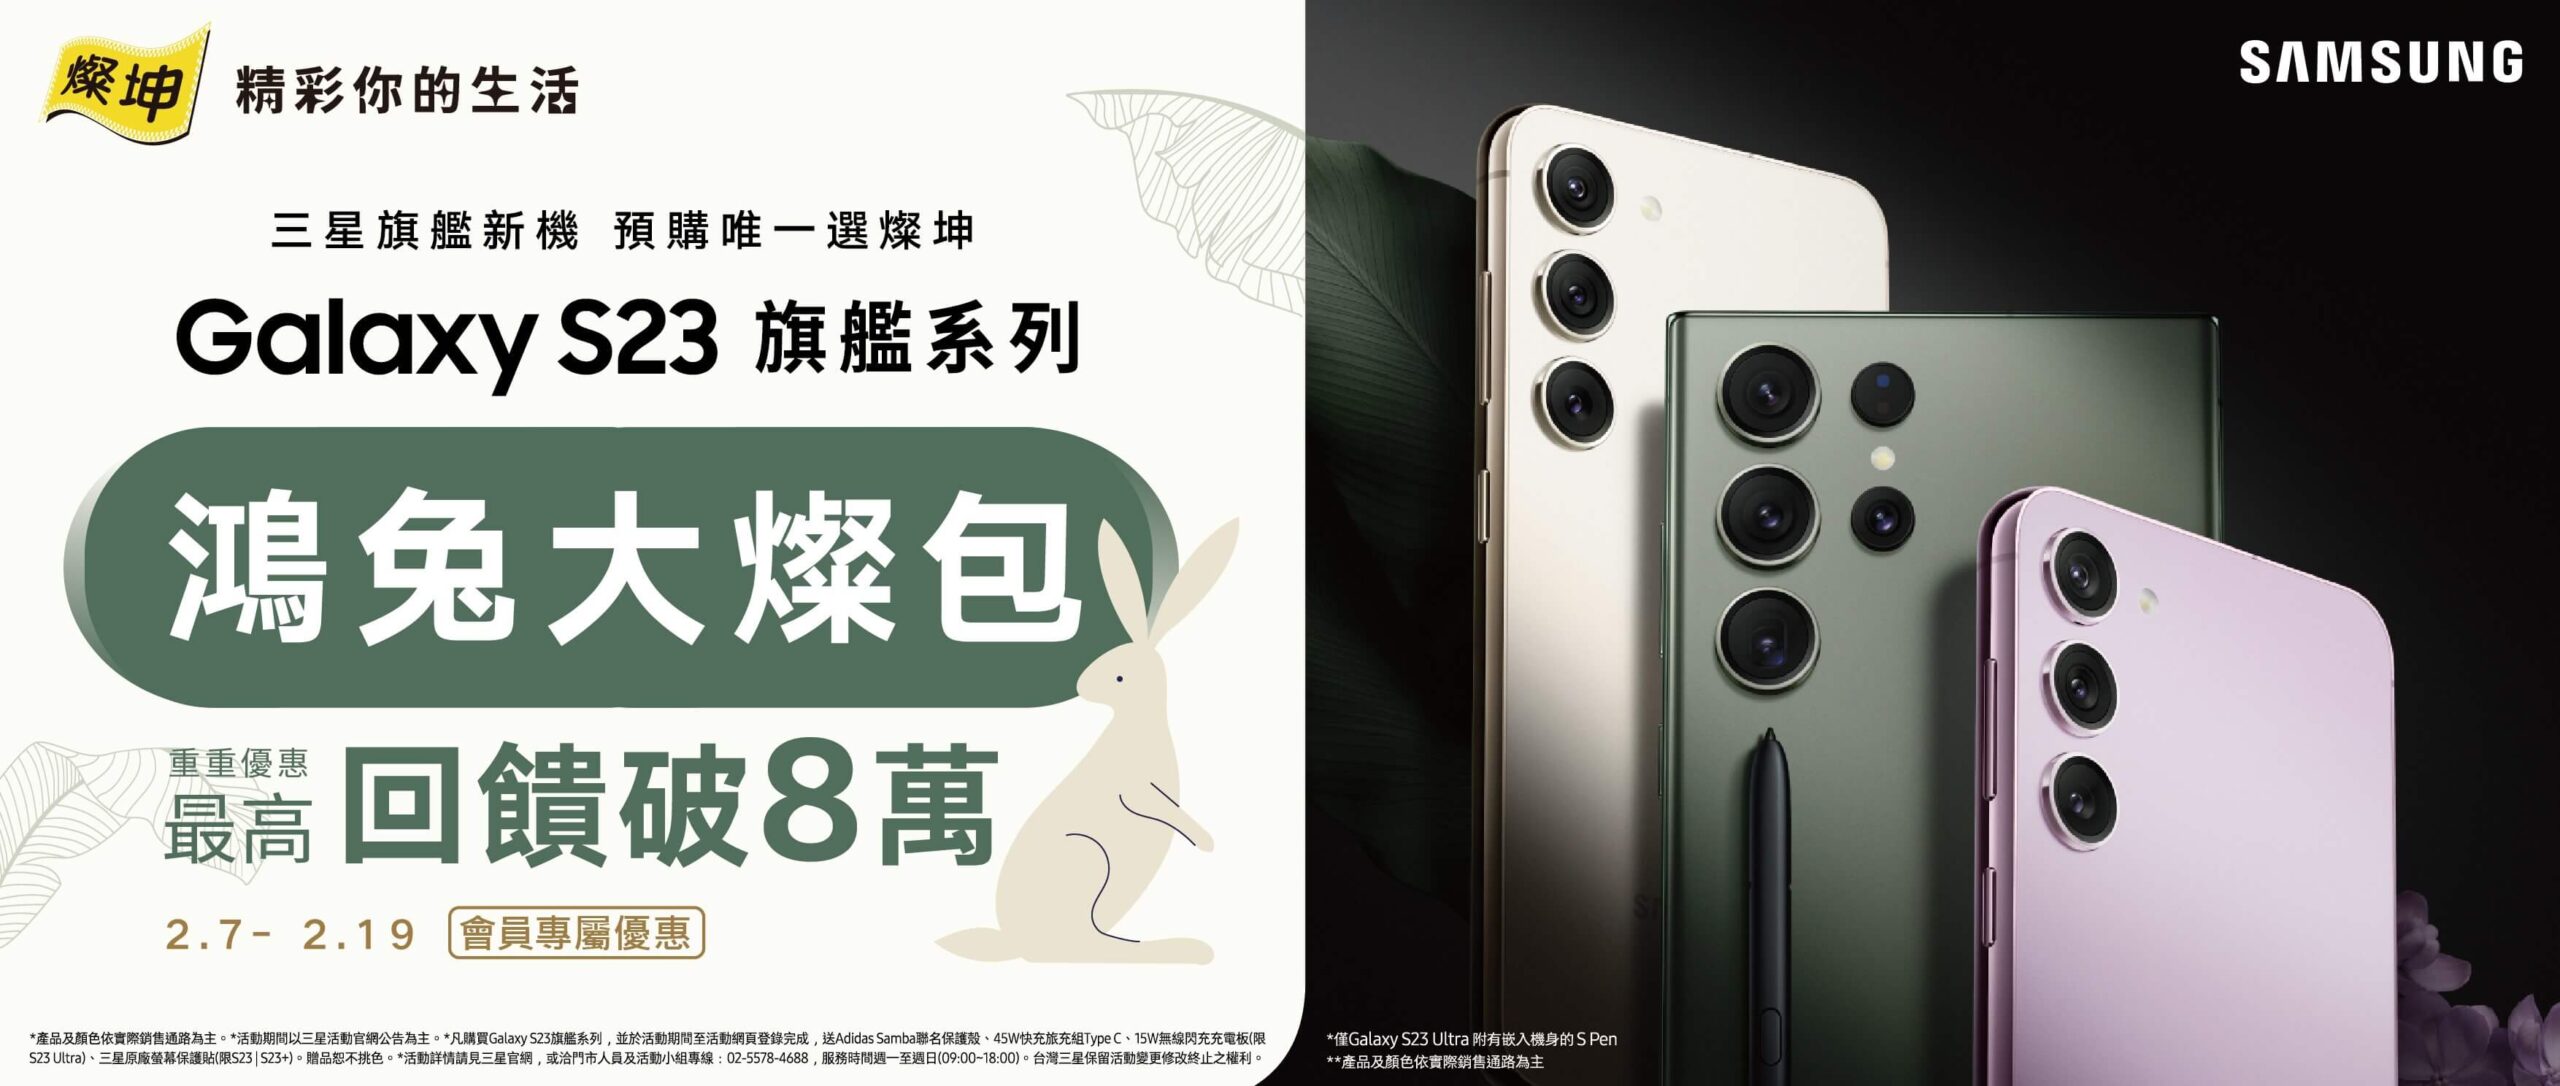 燦坤 S23 預購開跑！購買 Galaxy S23 系列首選燦坤，最高現金優惠8萬